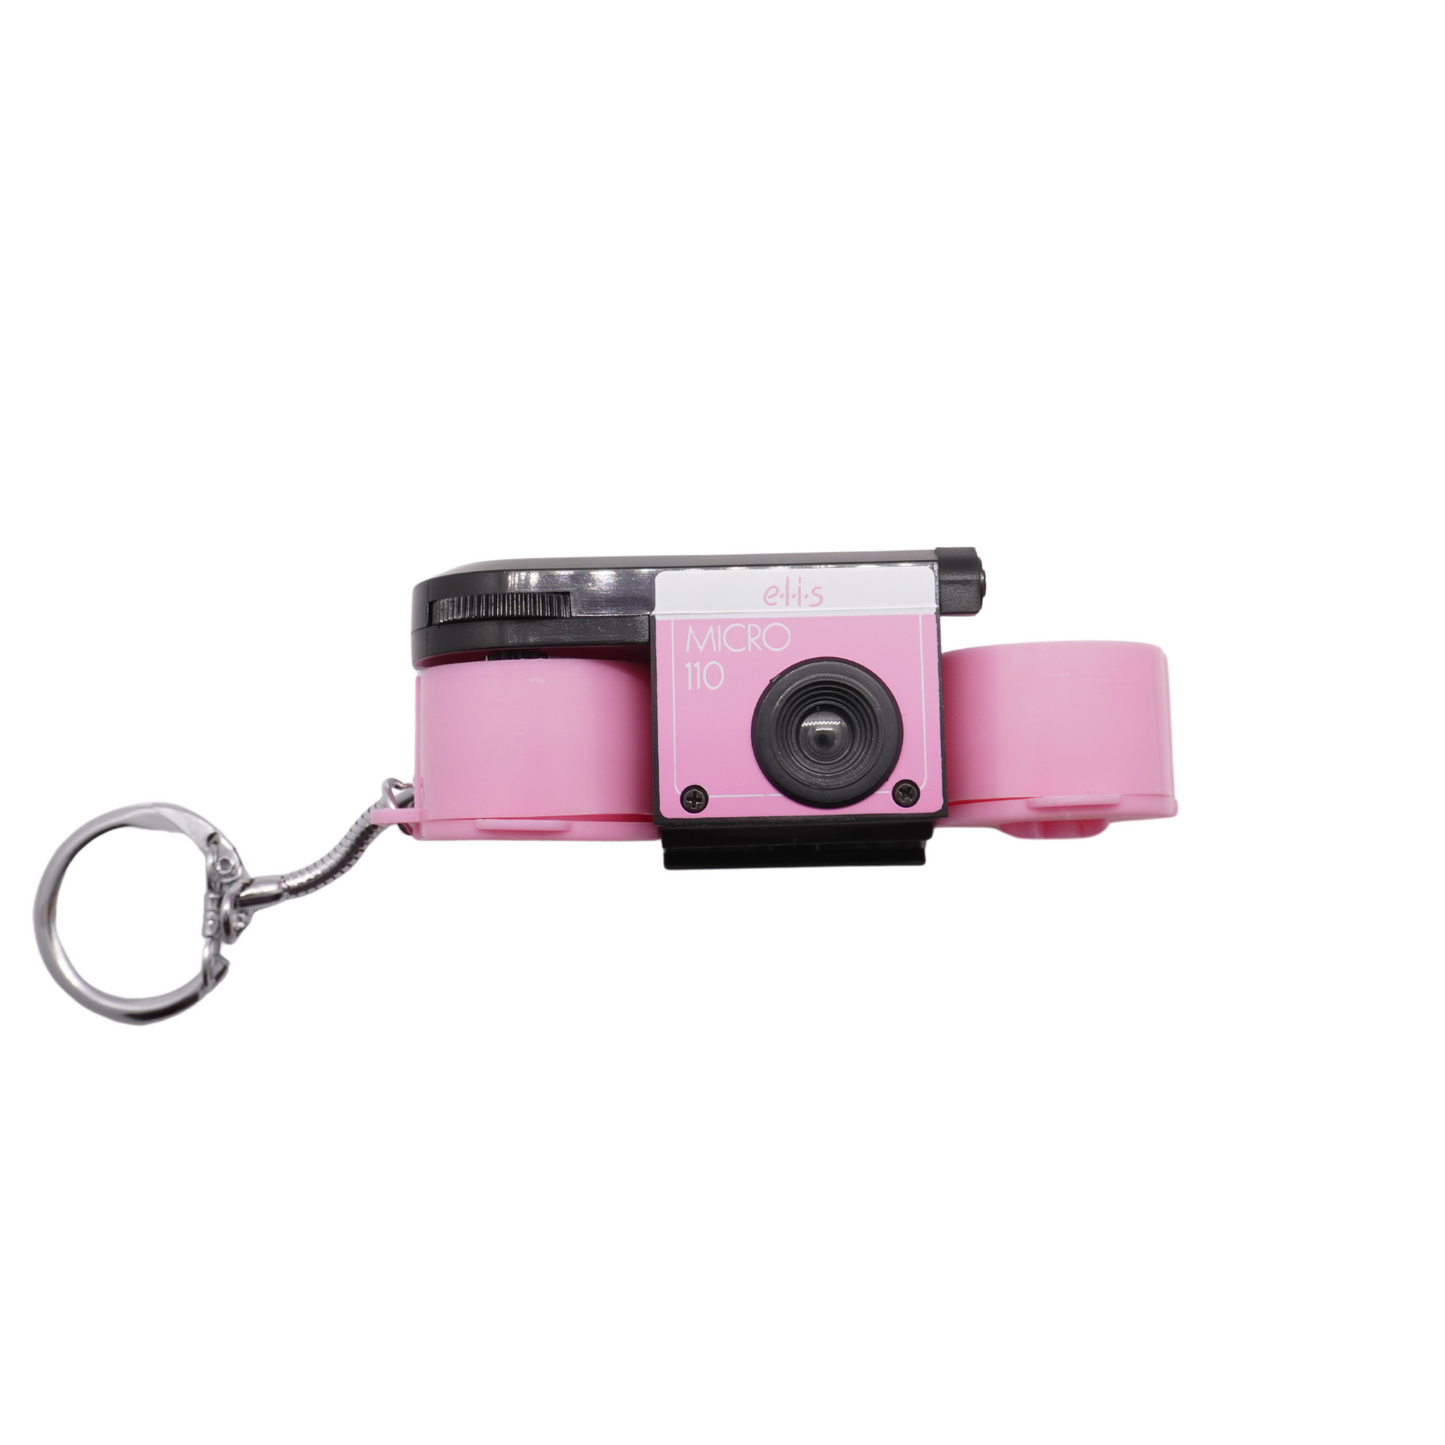 E.L.O.S Micro 110 Film Camera